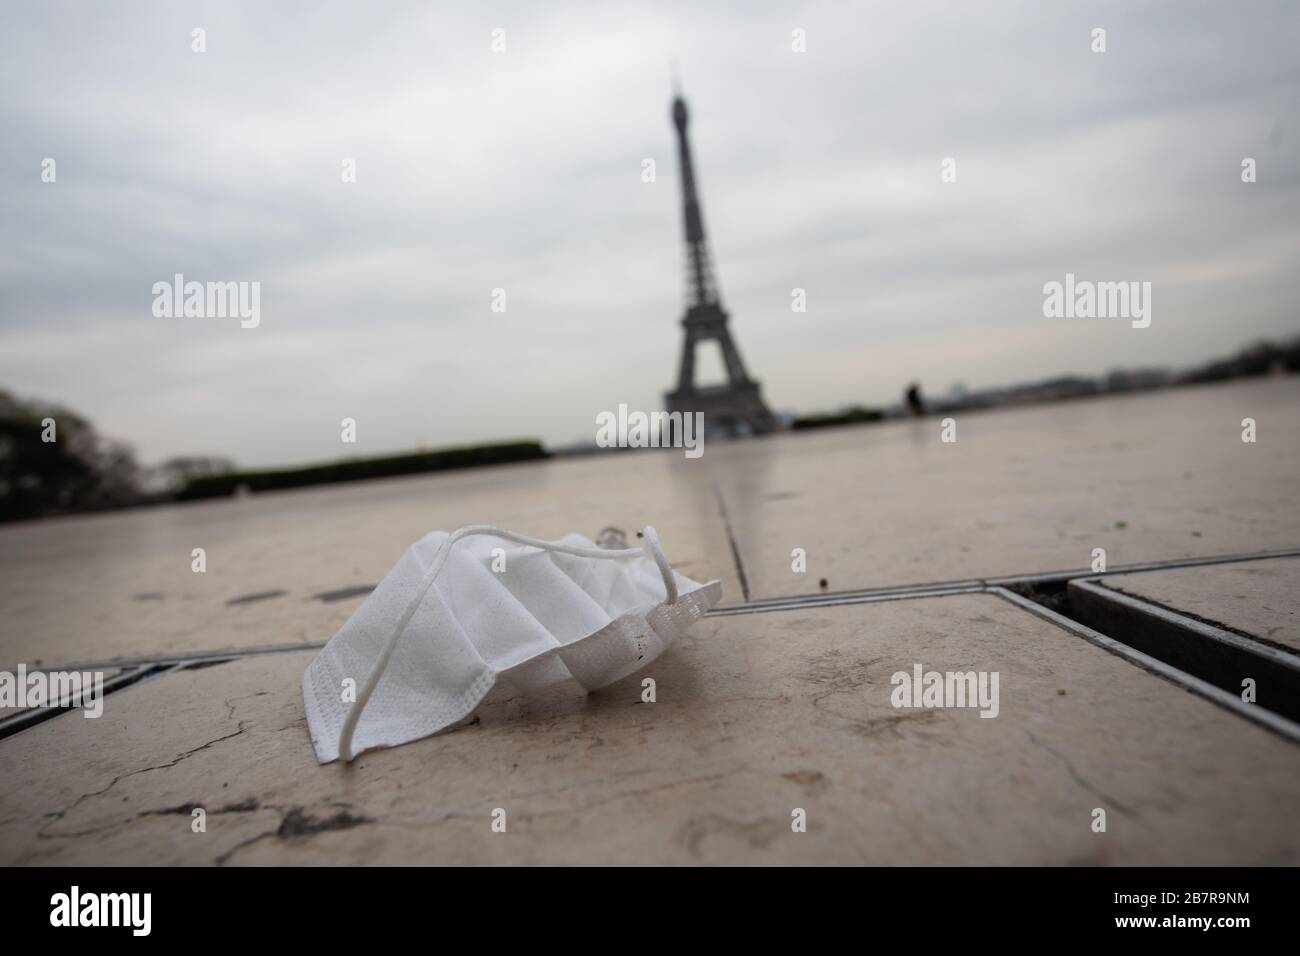 (200318) -- PARIGI, 18 marzo 2020 (Xinhua) -- UNA maschera facciale è vista a terra vicino alla Torre Eiffel a Parigi, Francia, il 17 marzo 2020. La Francia ha rilevato 7,730 casi di infezione da coronavirus e 175 persone erano morte del virus, il direttore generale della sanità Jerome Salomon ha annunciato martedì ad un aggiornamento quotidiano. Nelle ultime 24 ore, altre 1,097 persone sono state diagnosticate con il COVID-19, che ha causato altre 27 morti. Martedì mezzogiorno la Francia è stata messa a posto per almeno 15 giorni. Sono consentiti solo viaggi realmente necessari, come per motivi professionali o sanitari o per acquistare alimenti. (Punto Foto Stock